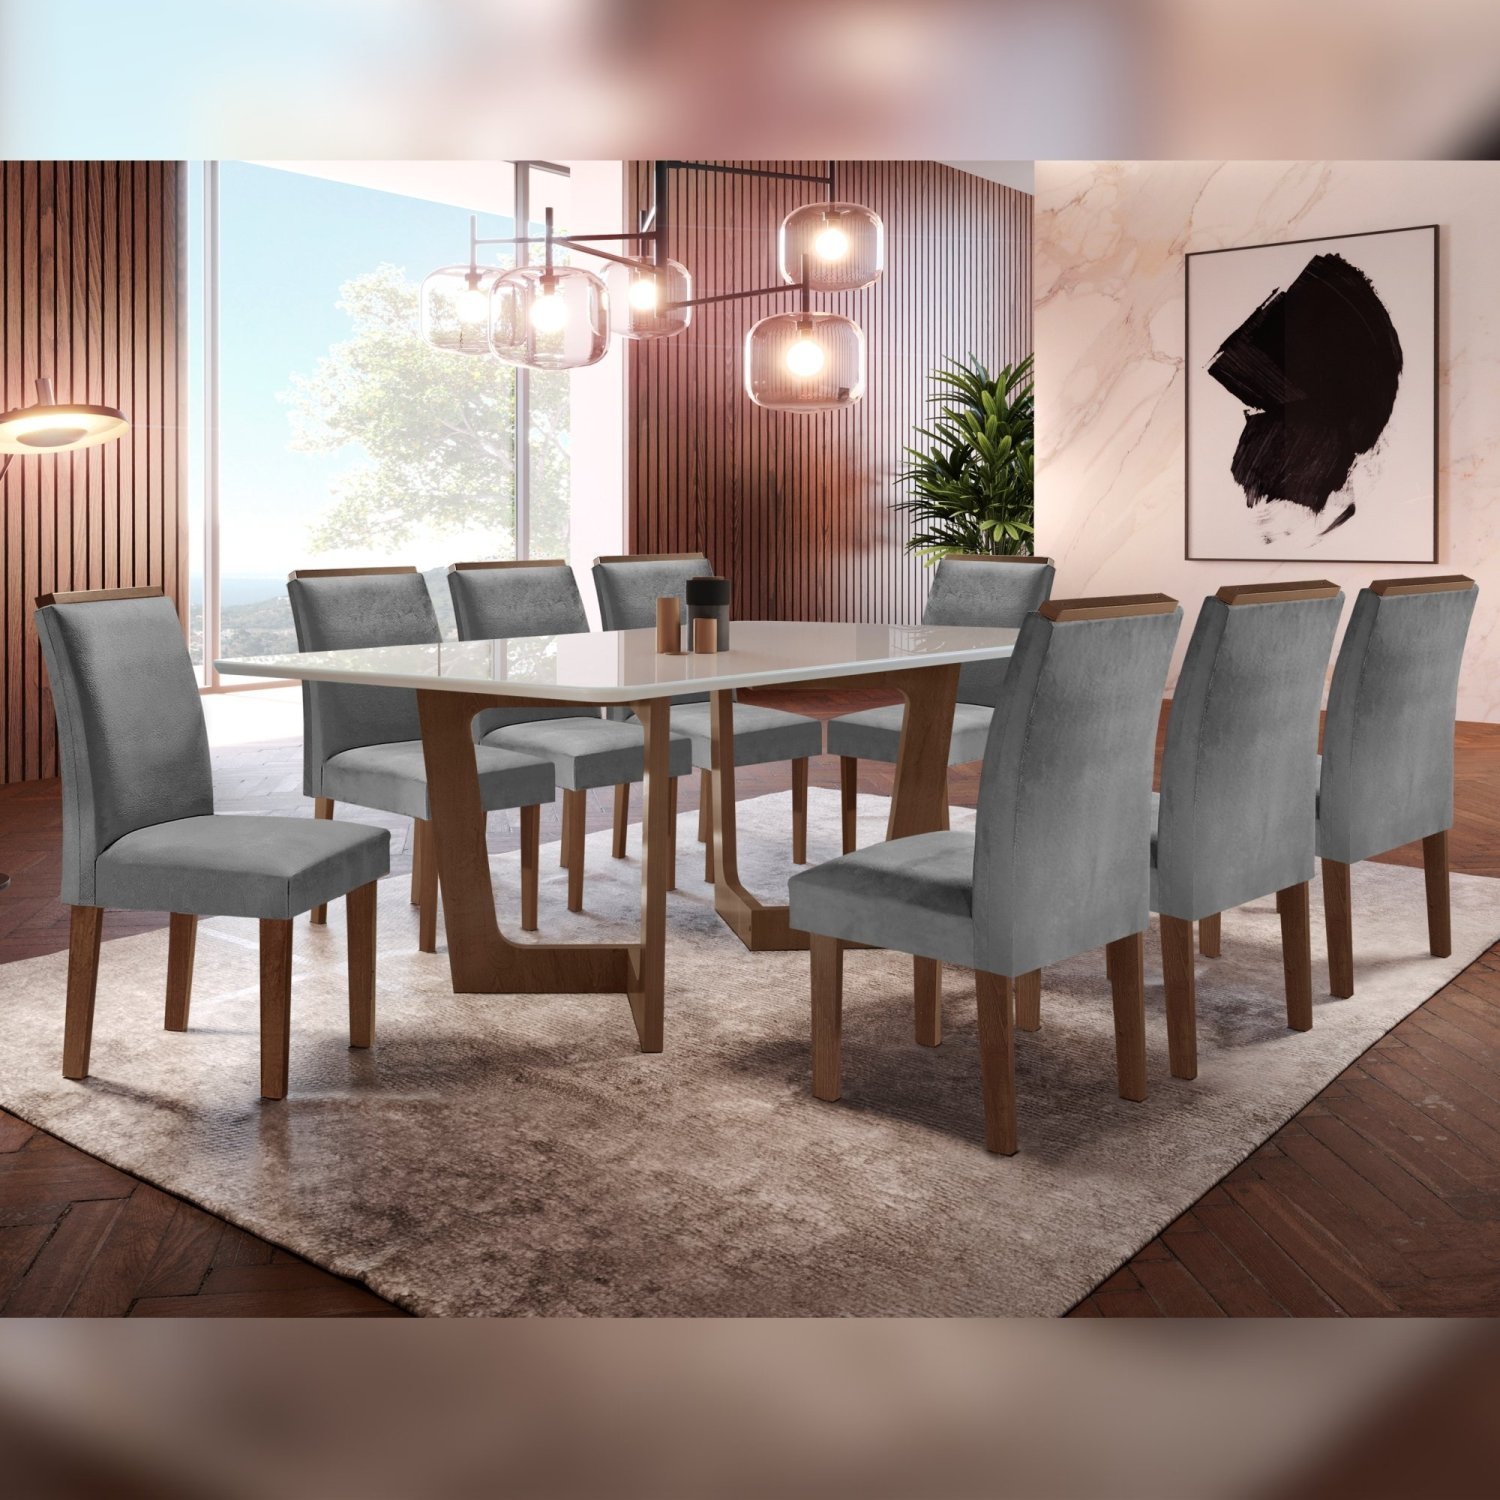 Mesas para salas de estar, jantar e reuniões., - Detalhes do Bloco DWG